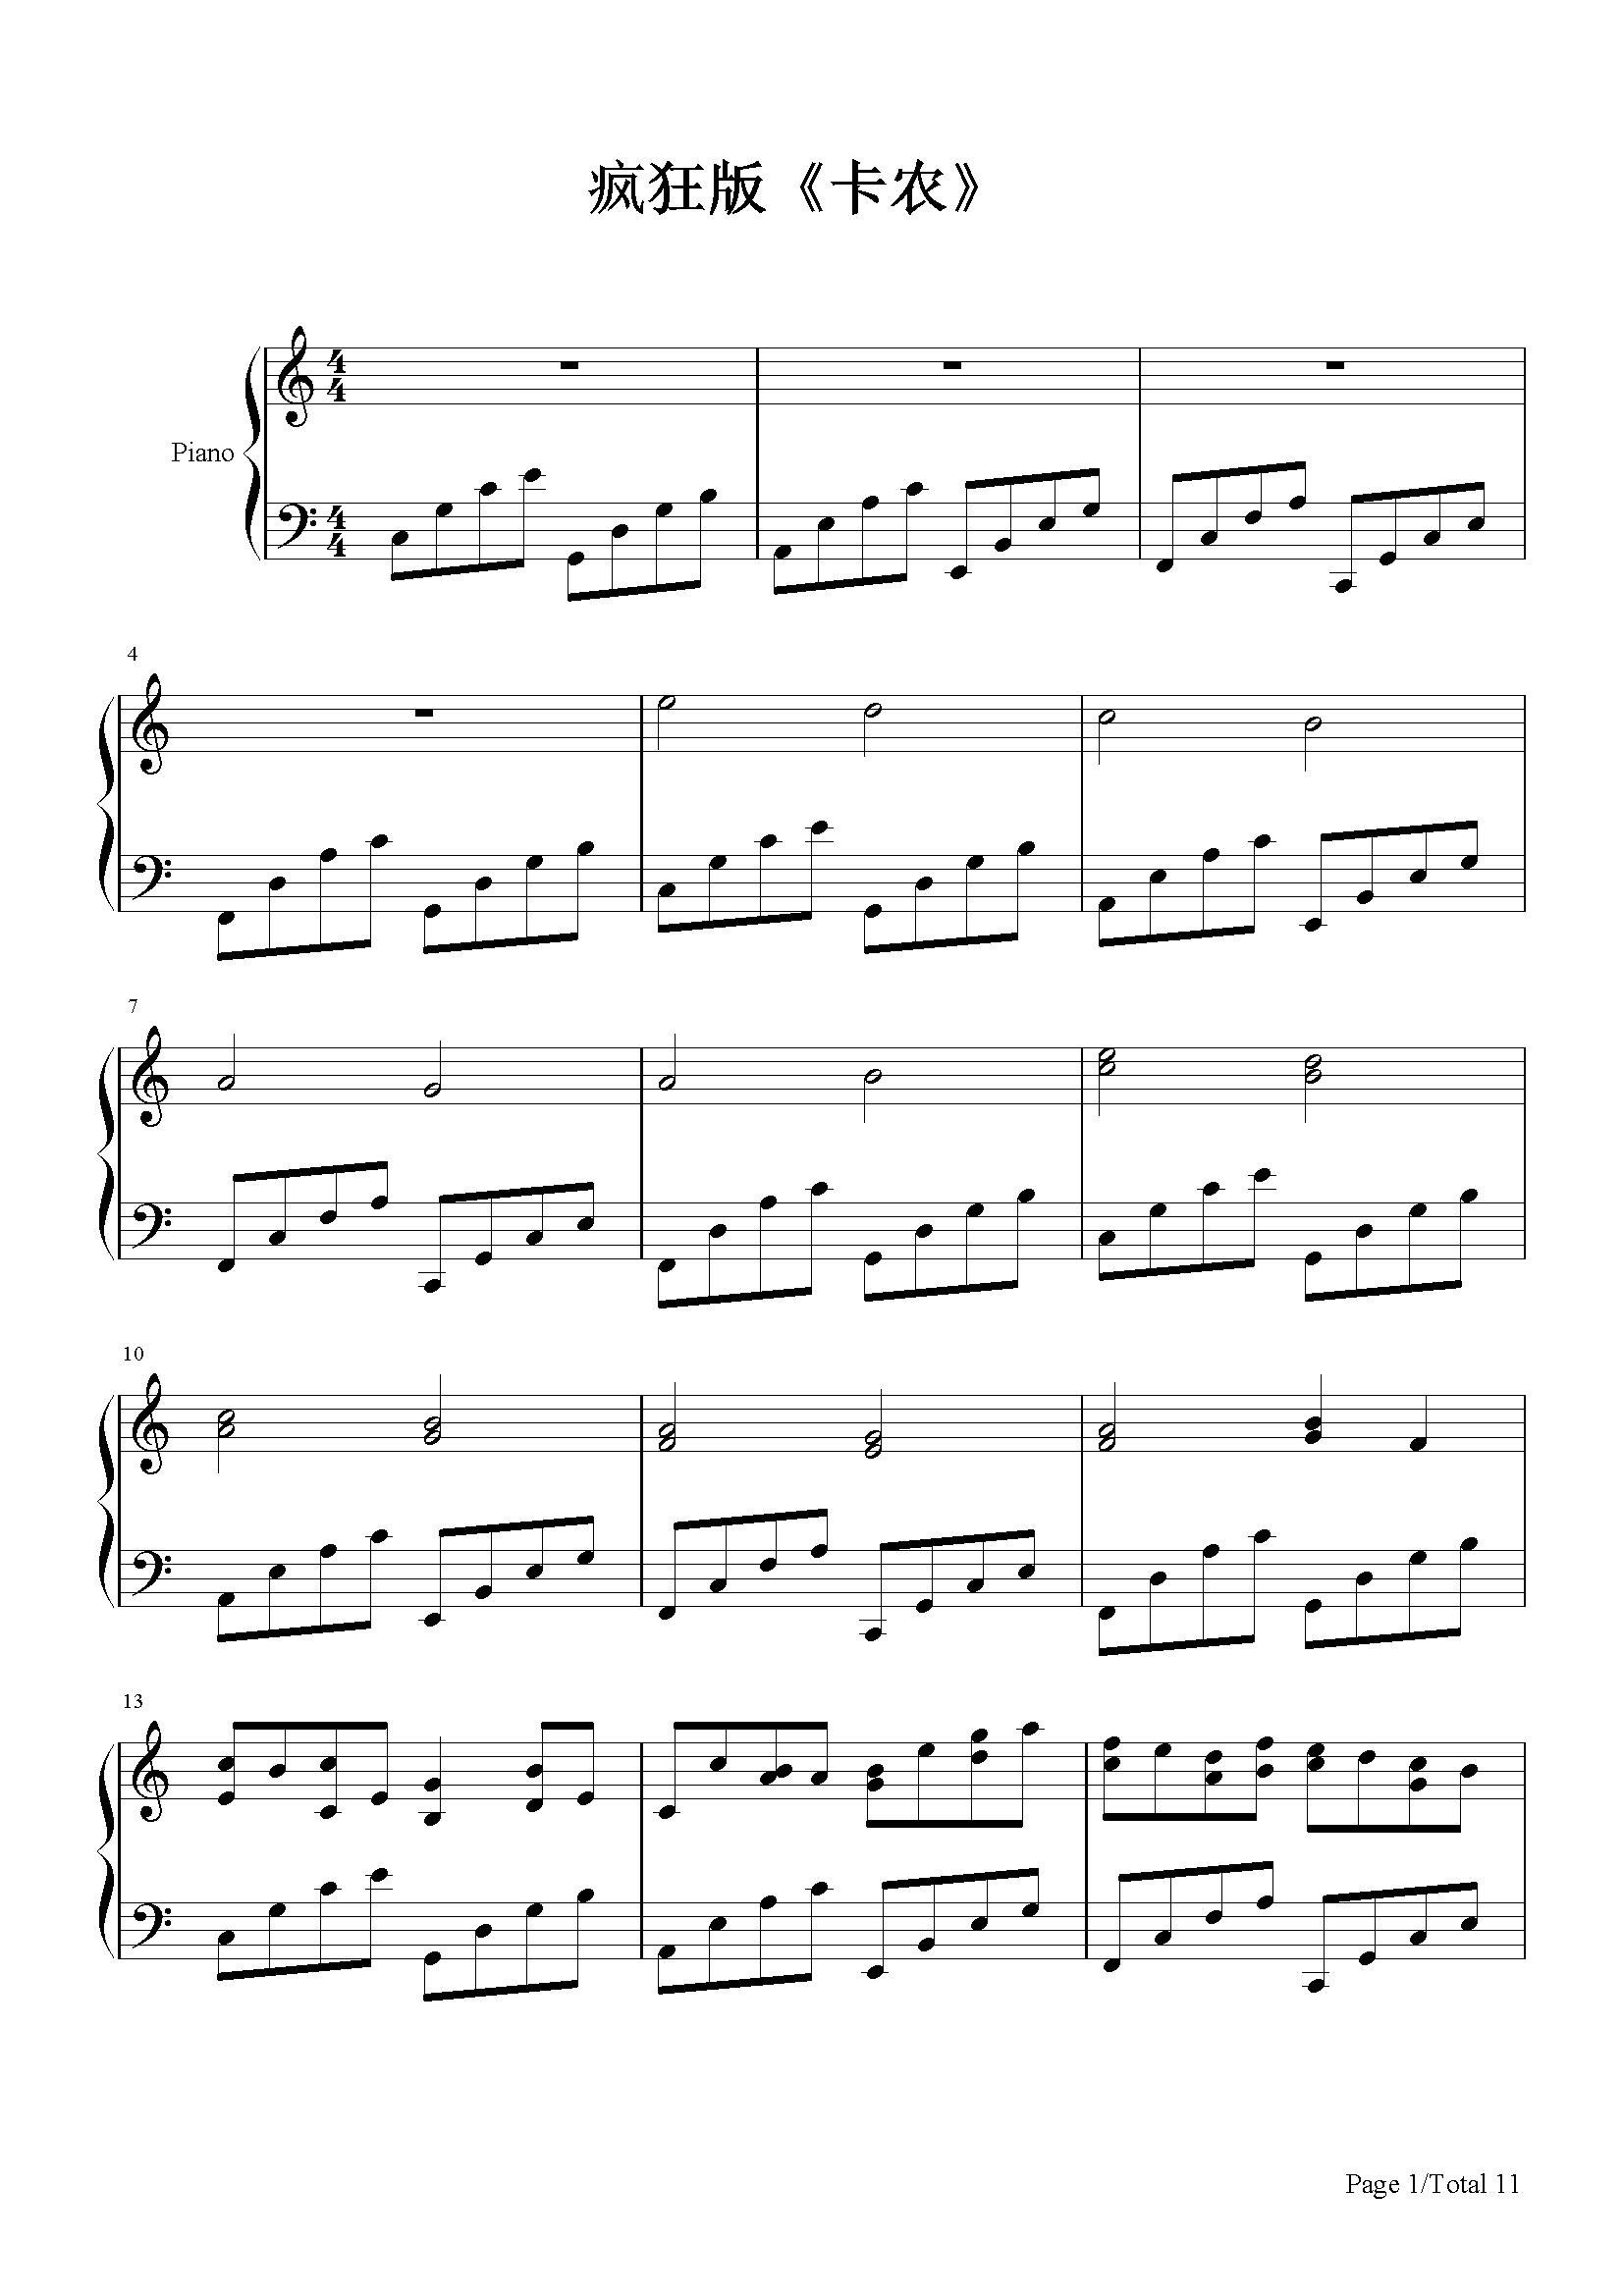 卡农钢琴谱简单版视频(钢琴谱卡农简易版)